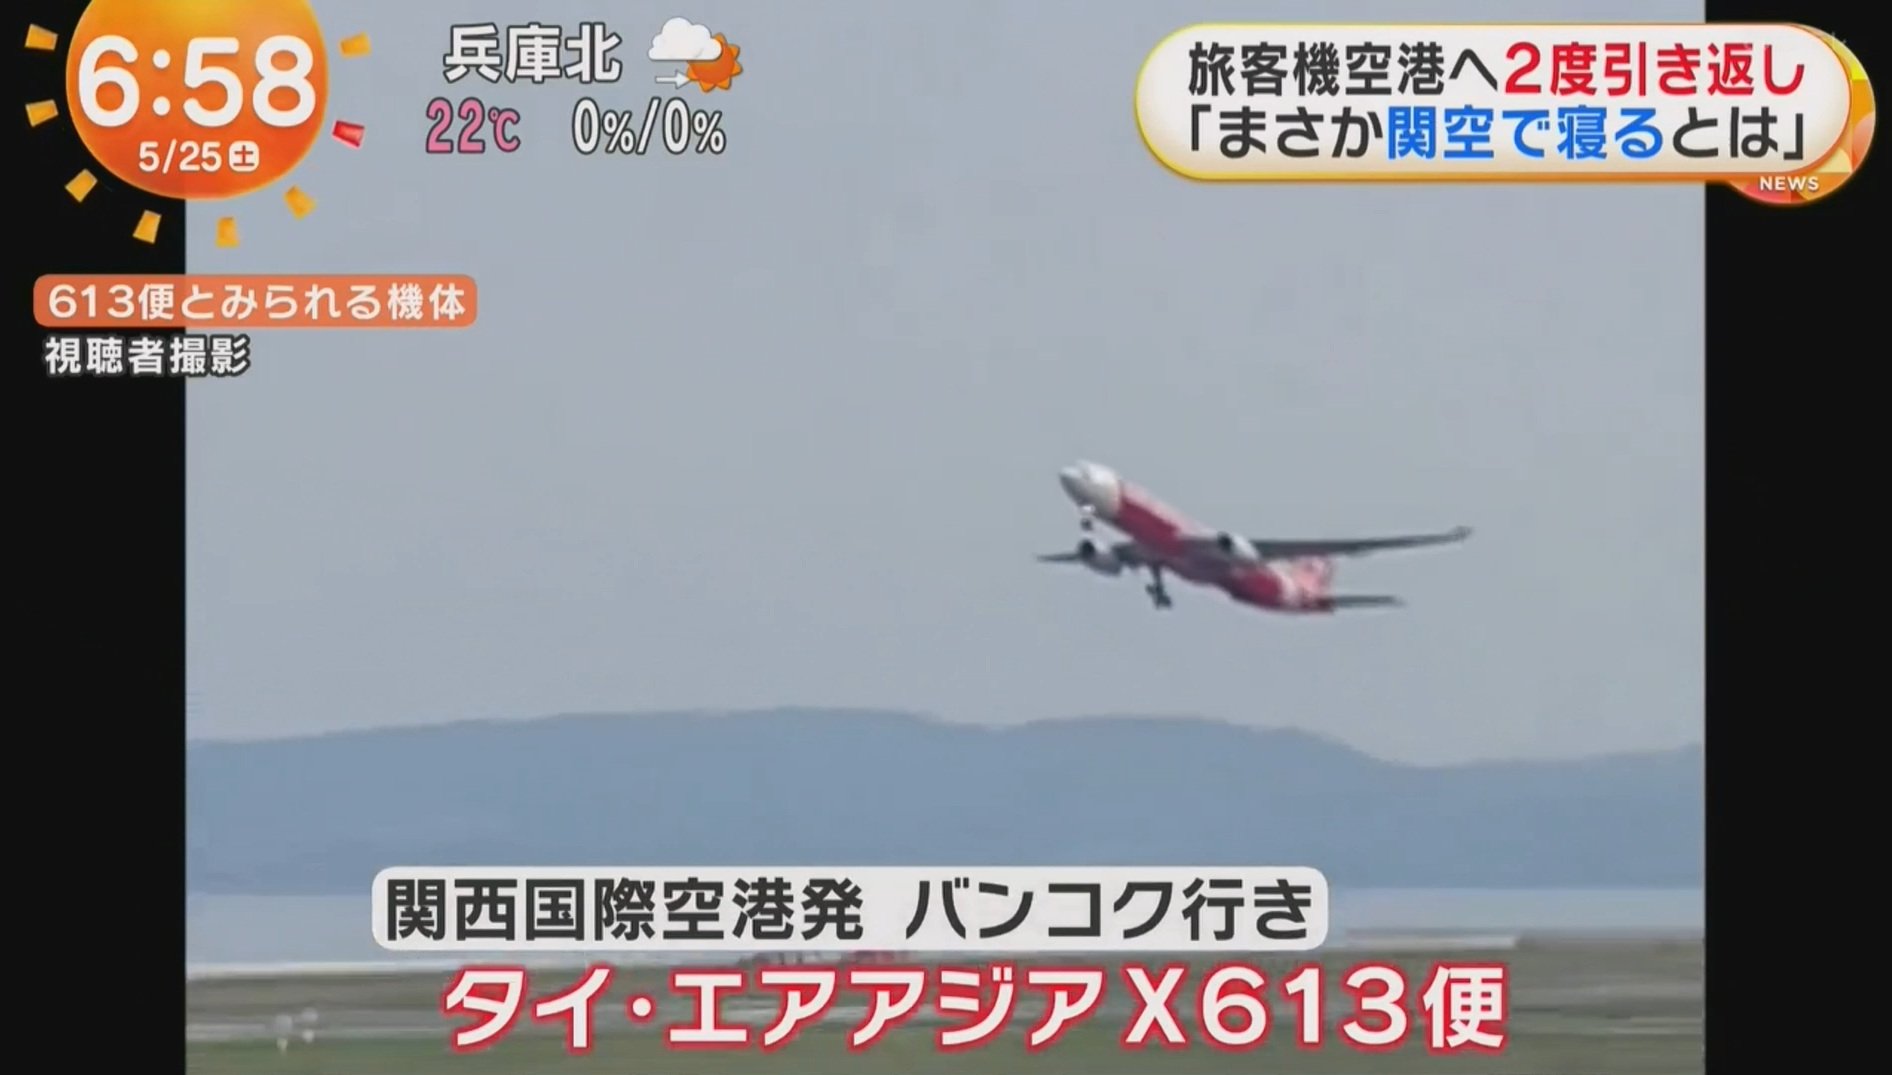 350 ผู้โดยสารระทึก เครื่องบินล้อไม่เก็บ บินวนกลับสนามบินญี่ปุ่น 2 รอบ 